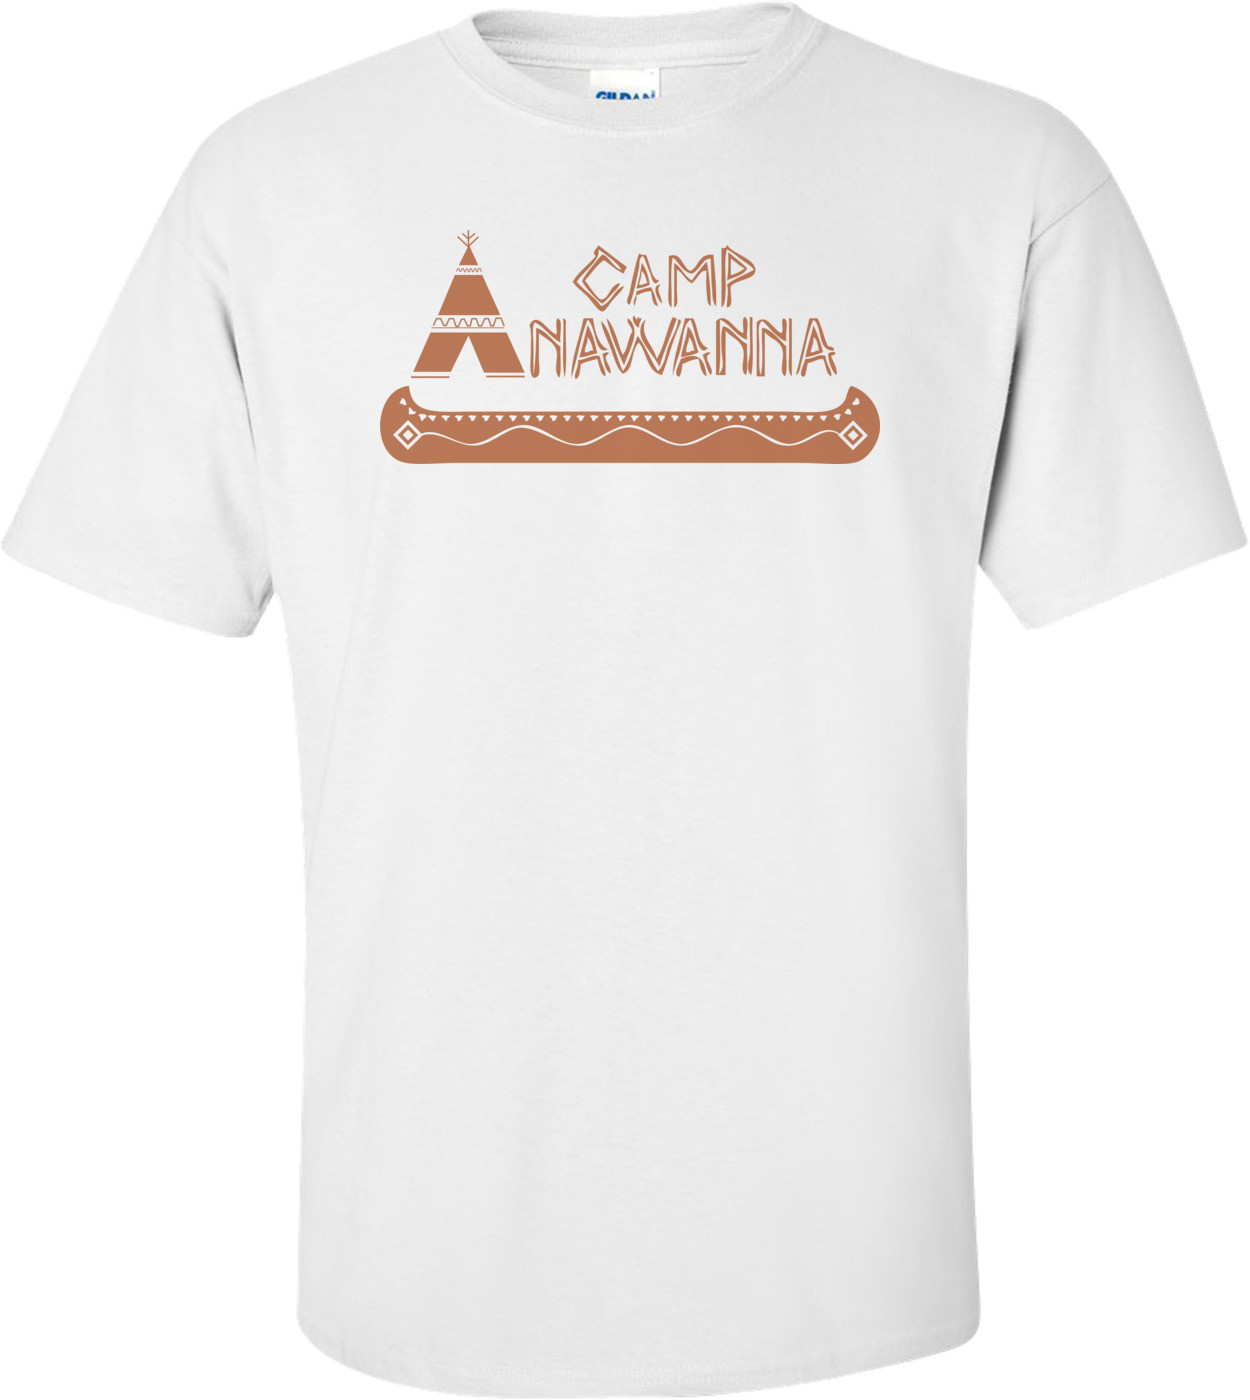 Camp Anawanna T-shirt